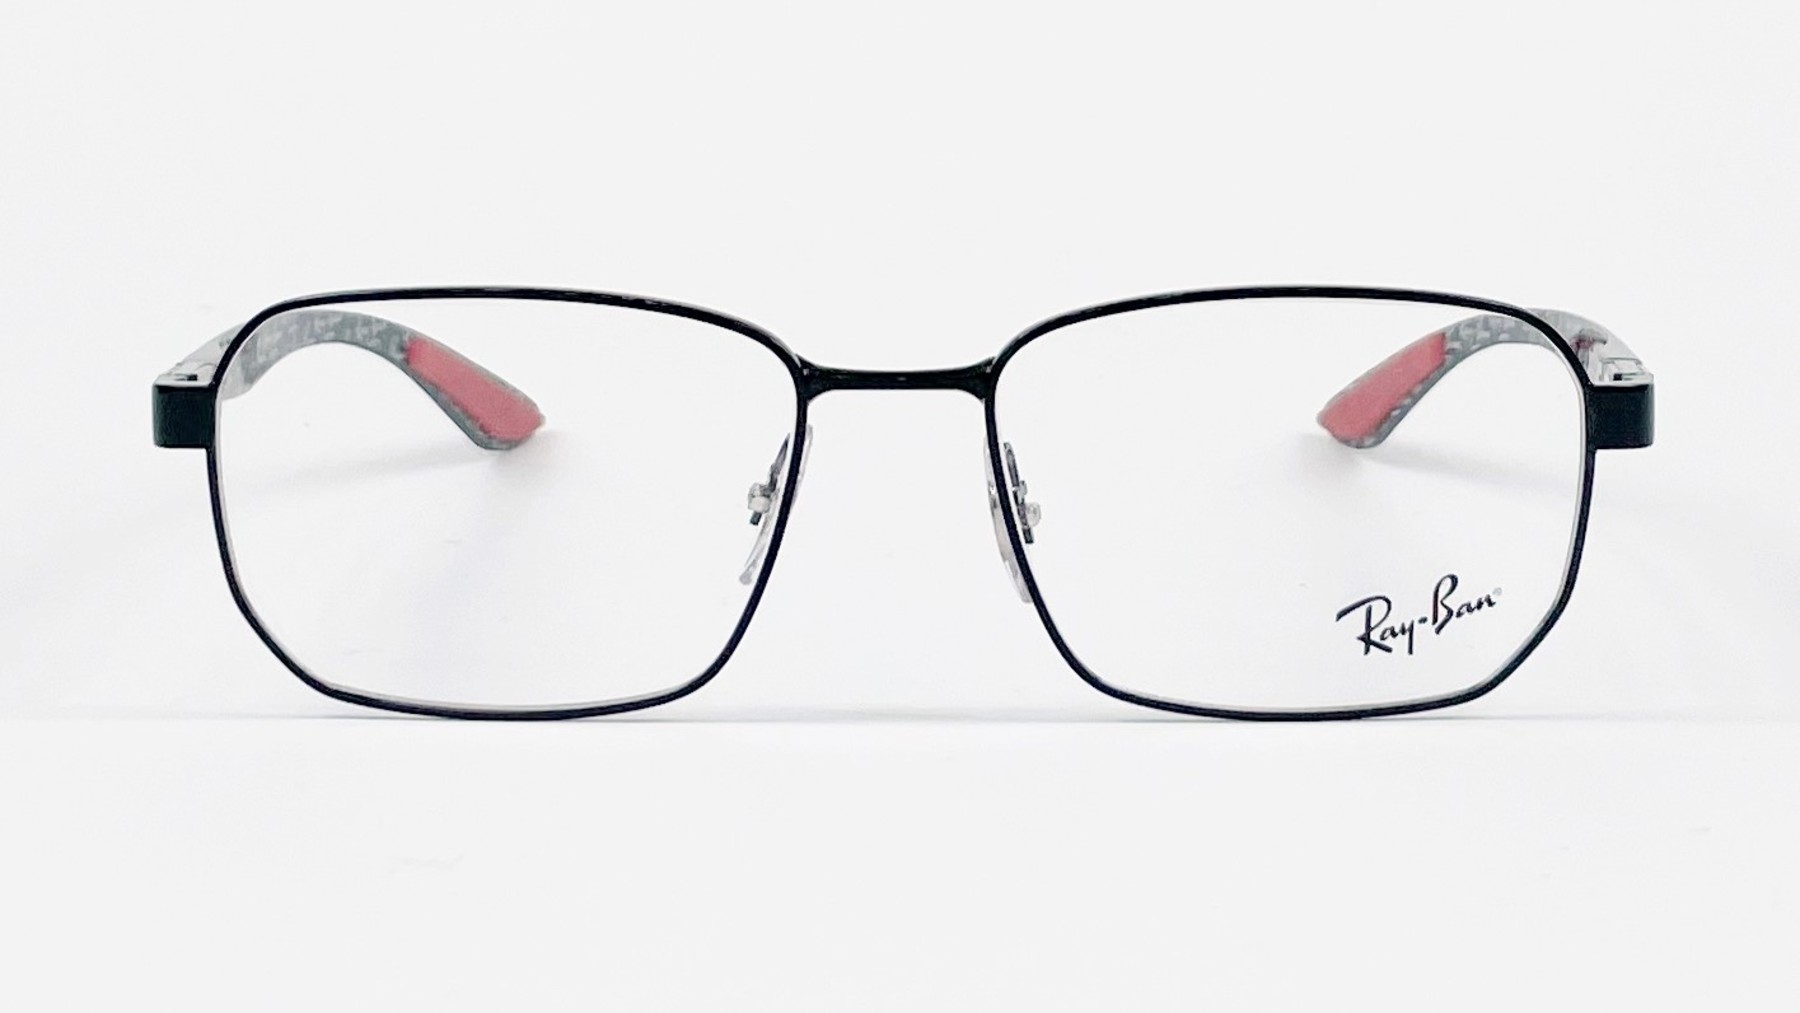 RayBan RB8419 2509, Korean glasses, sunglasses, eyeglasses, glasses